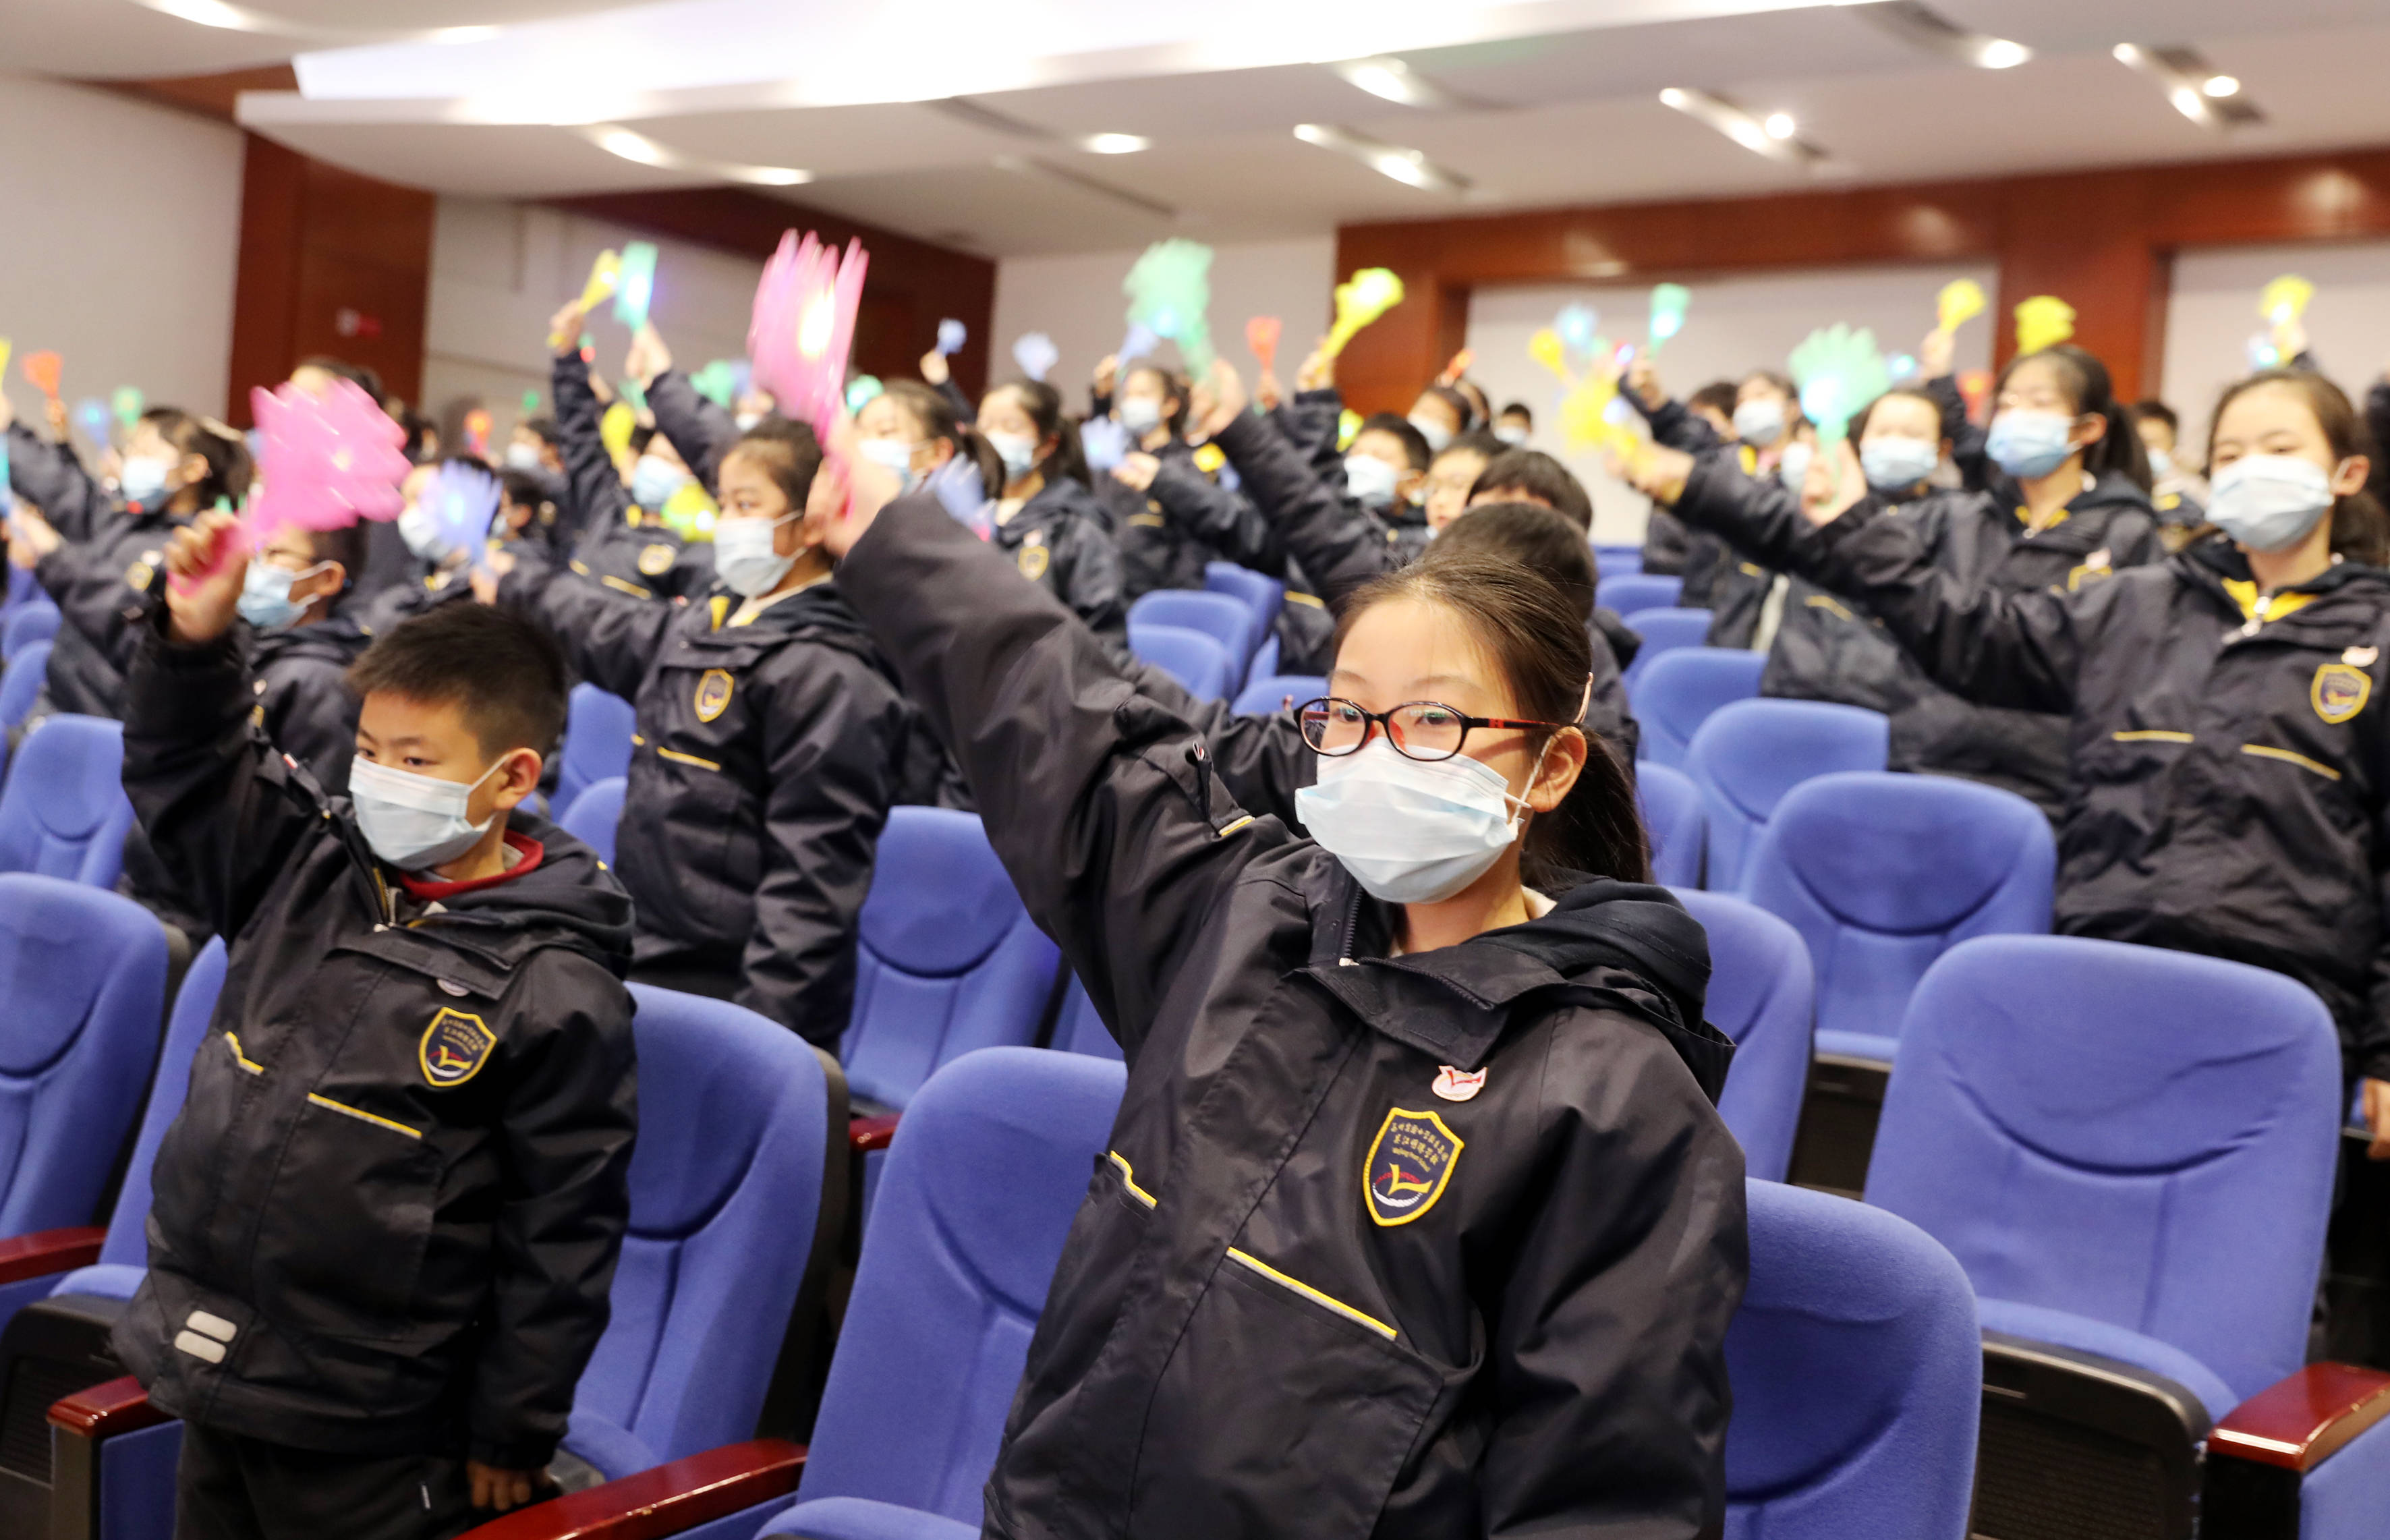 苏州吴江明珠学校,吴江明珠幼儿园举行十周年办学成果展示活动